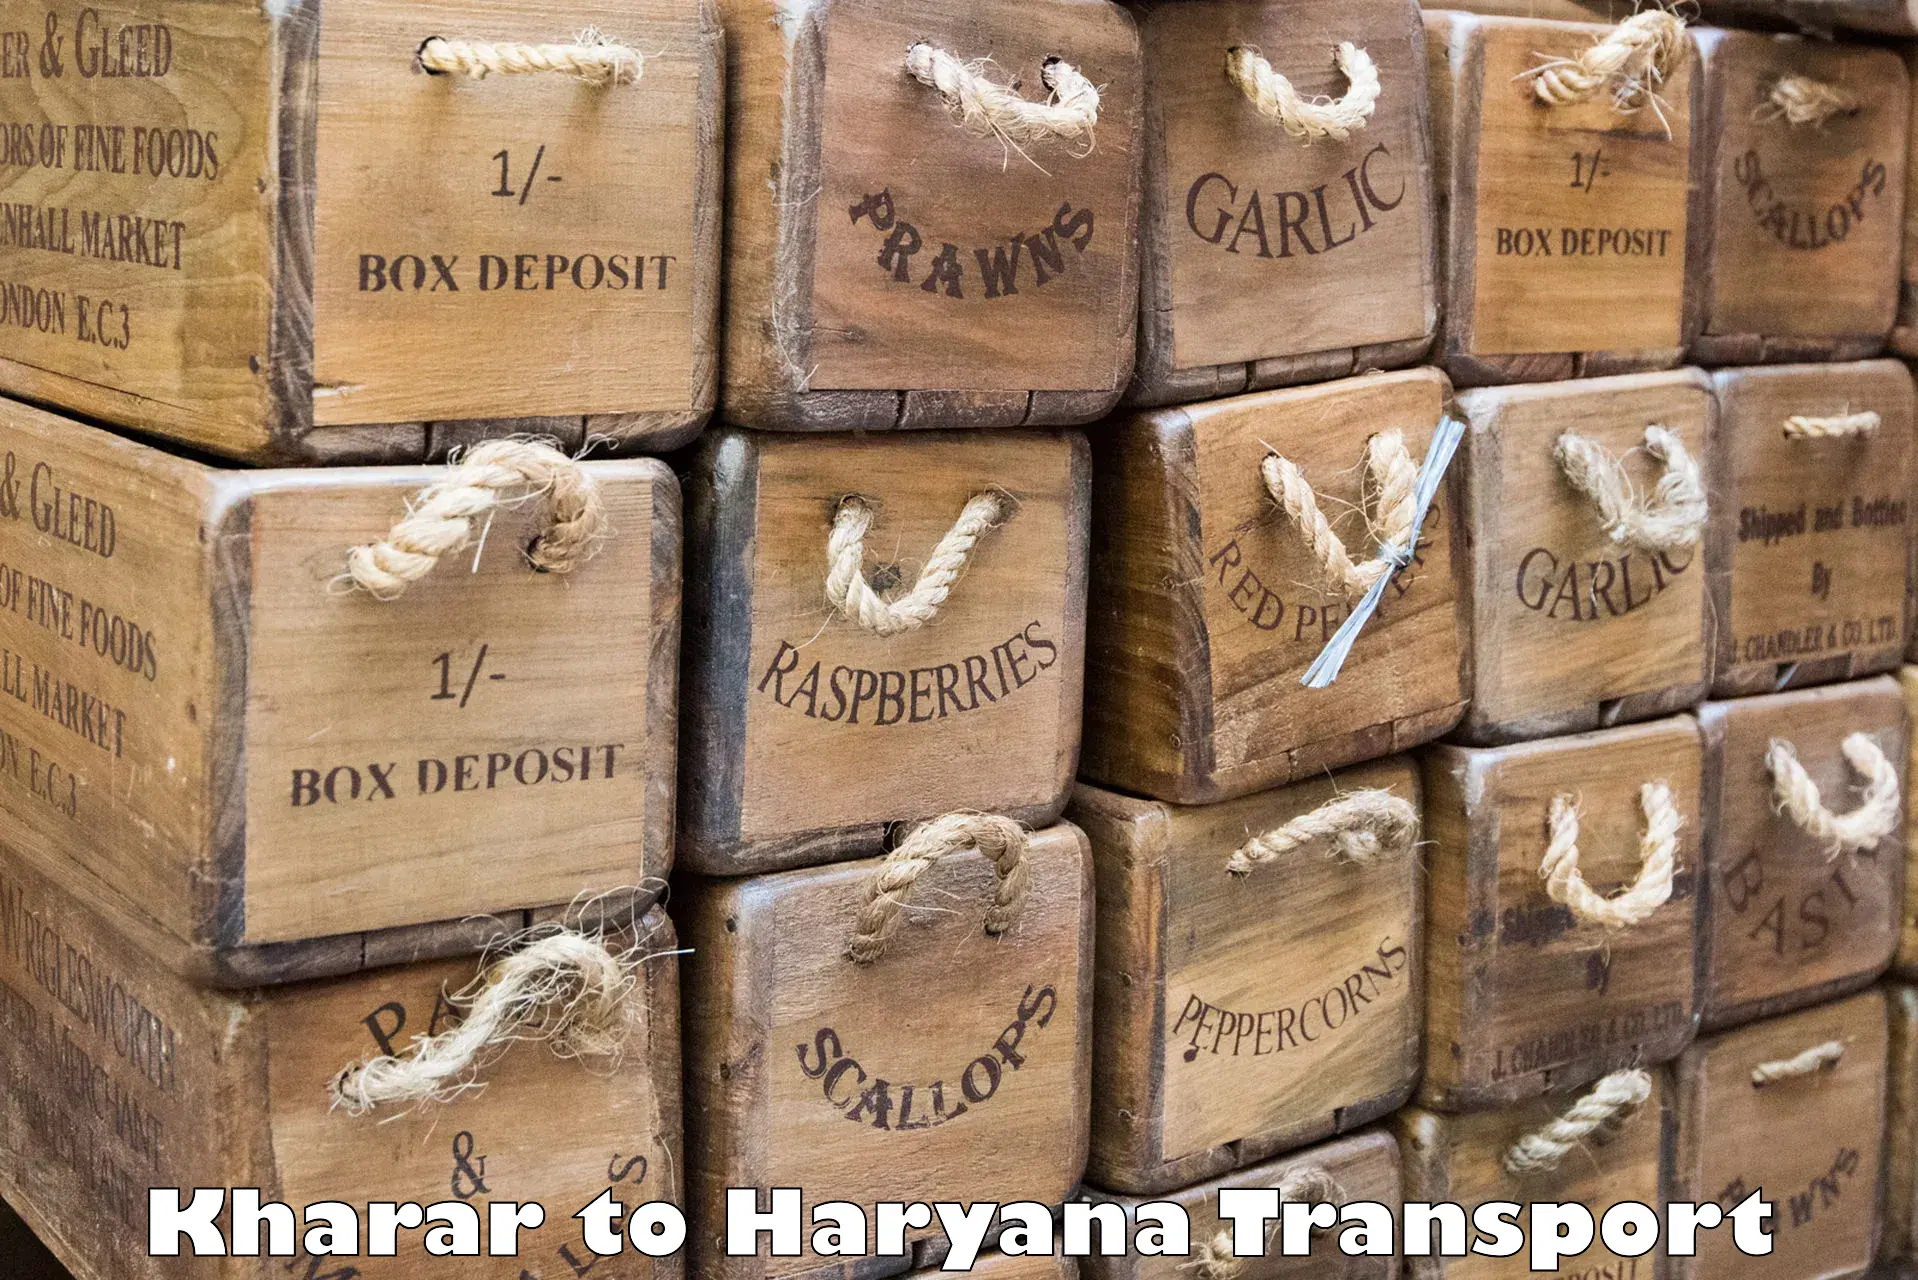 Air freight transport services Kharar to Assandh